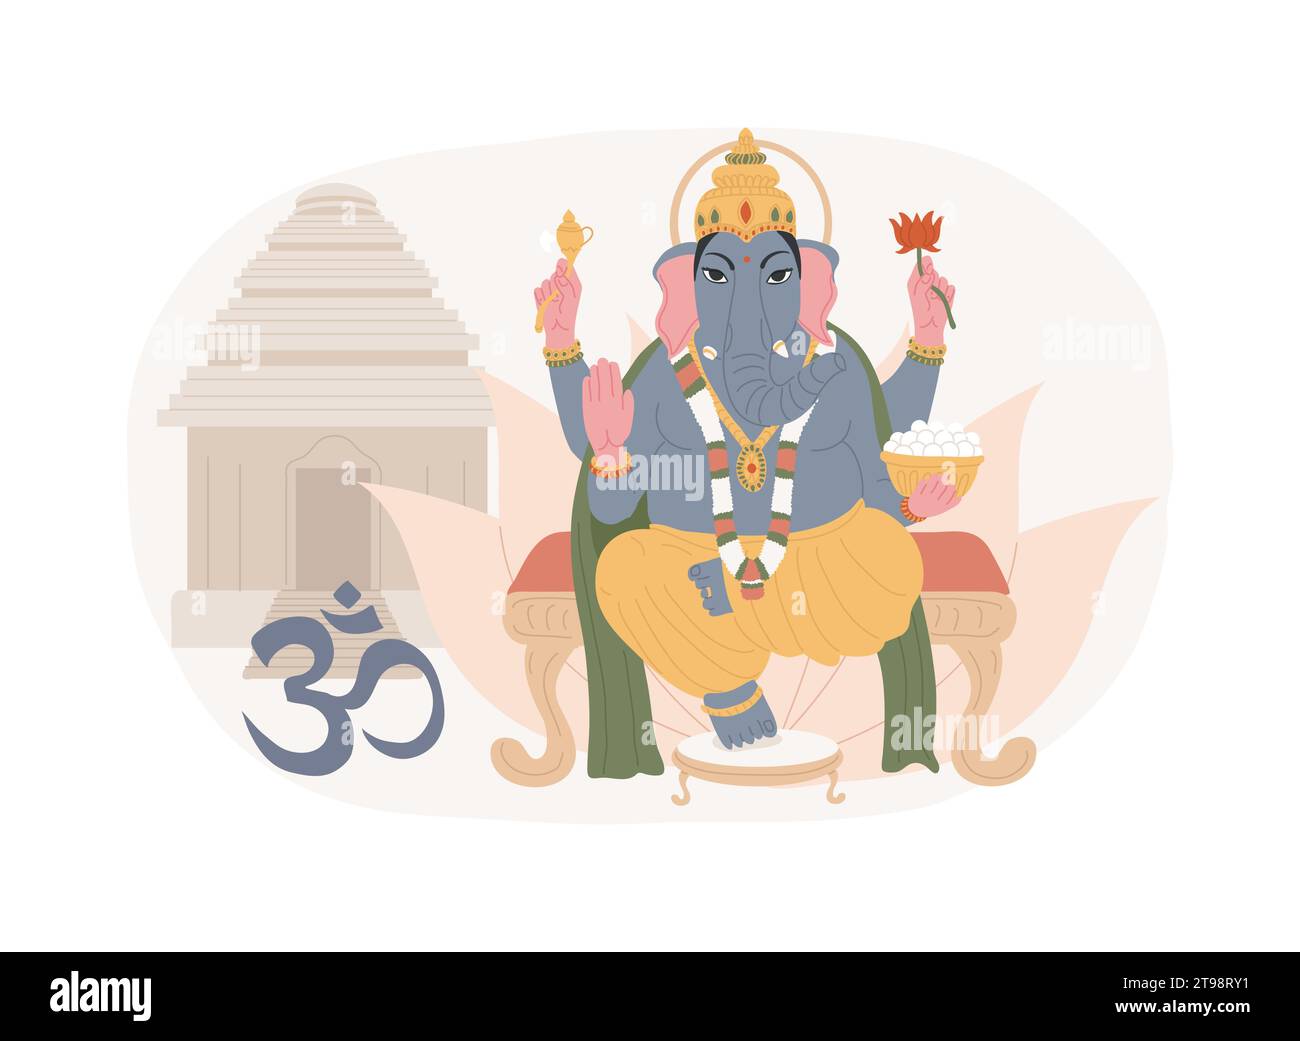 Illustrazione del vettore del concetto isolato di induismo. La più antica religione indiana e il dharma, il dio vishnu ganesh, il signore shiva krishna, simbolo dell'induismo, om mantra sacro, lotus feet, diwali vector concept. Illustrazione Vettoriale